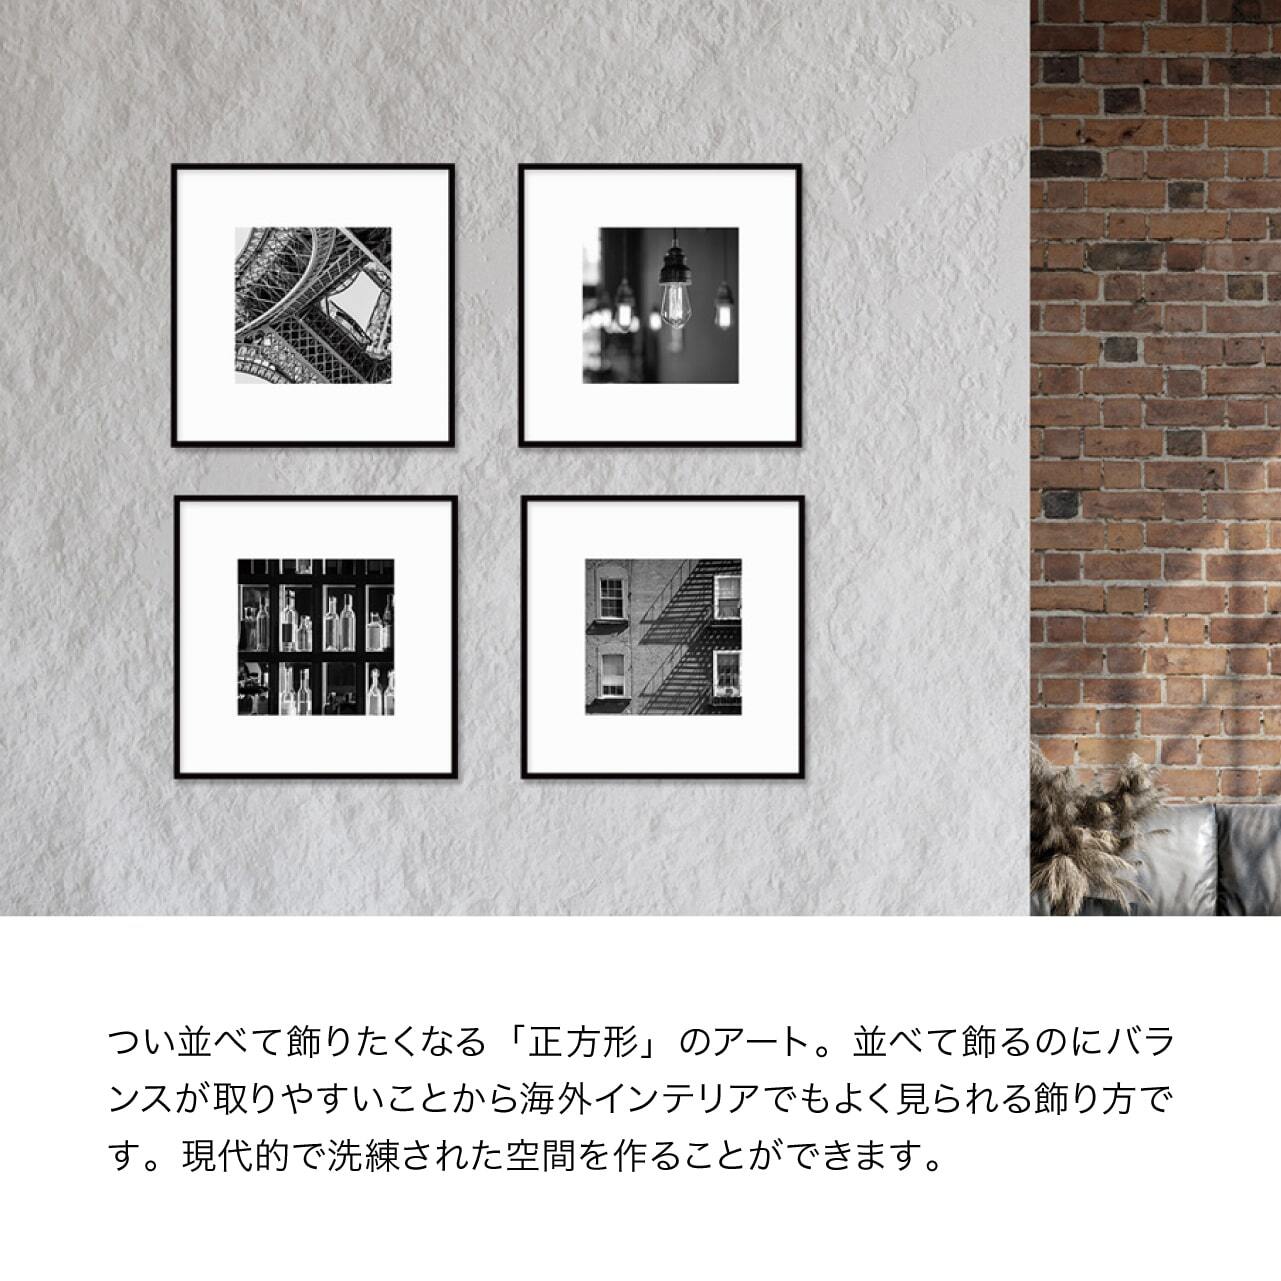 正方形アート フレーム付き / 写真 / アートポスター【 2サイズ展開